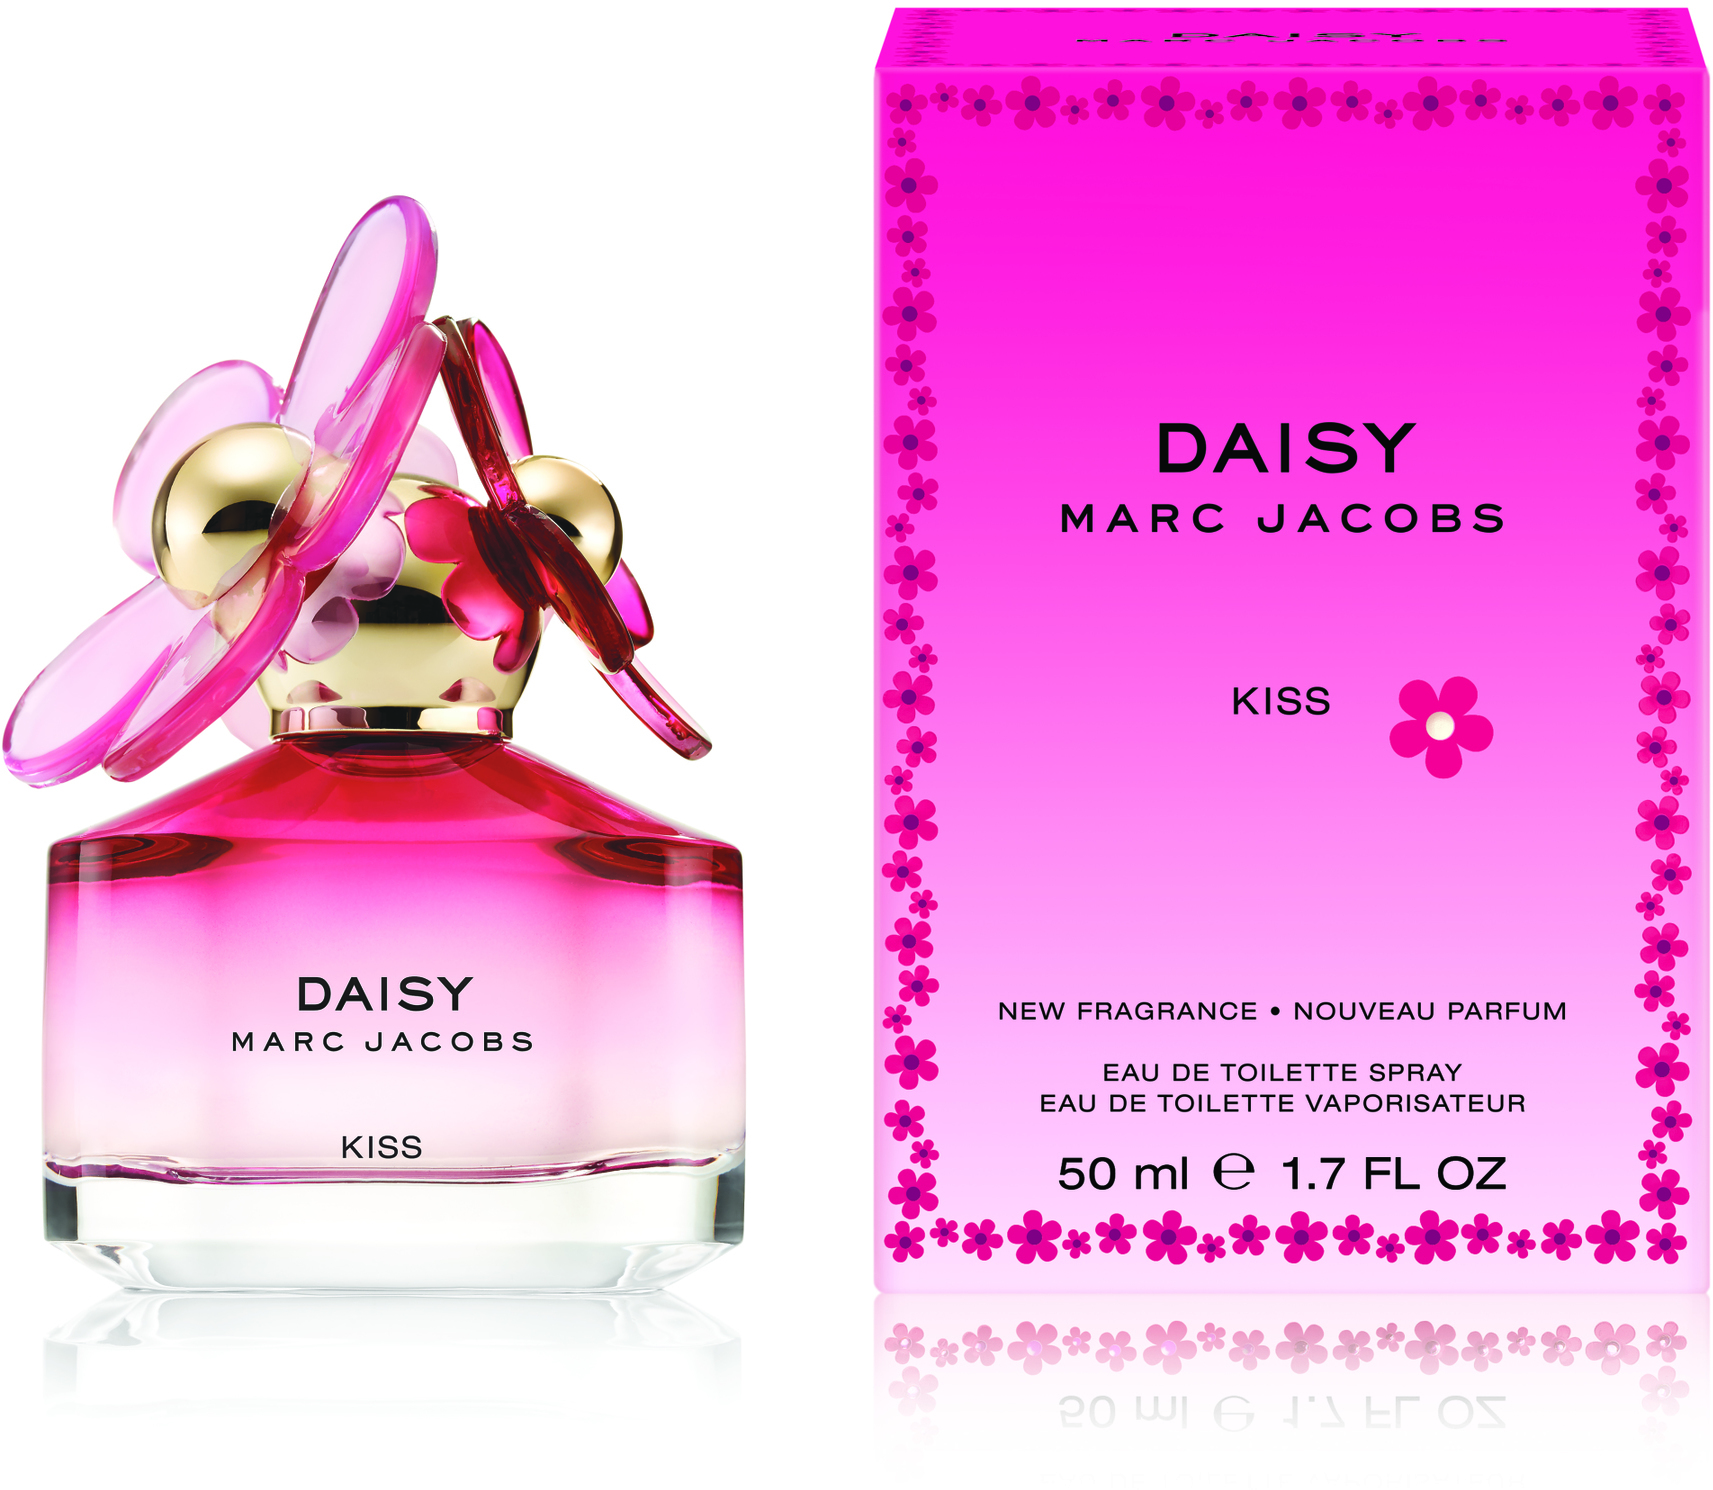 marc jacobs daisy kiss perfume